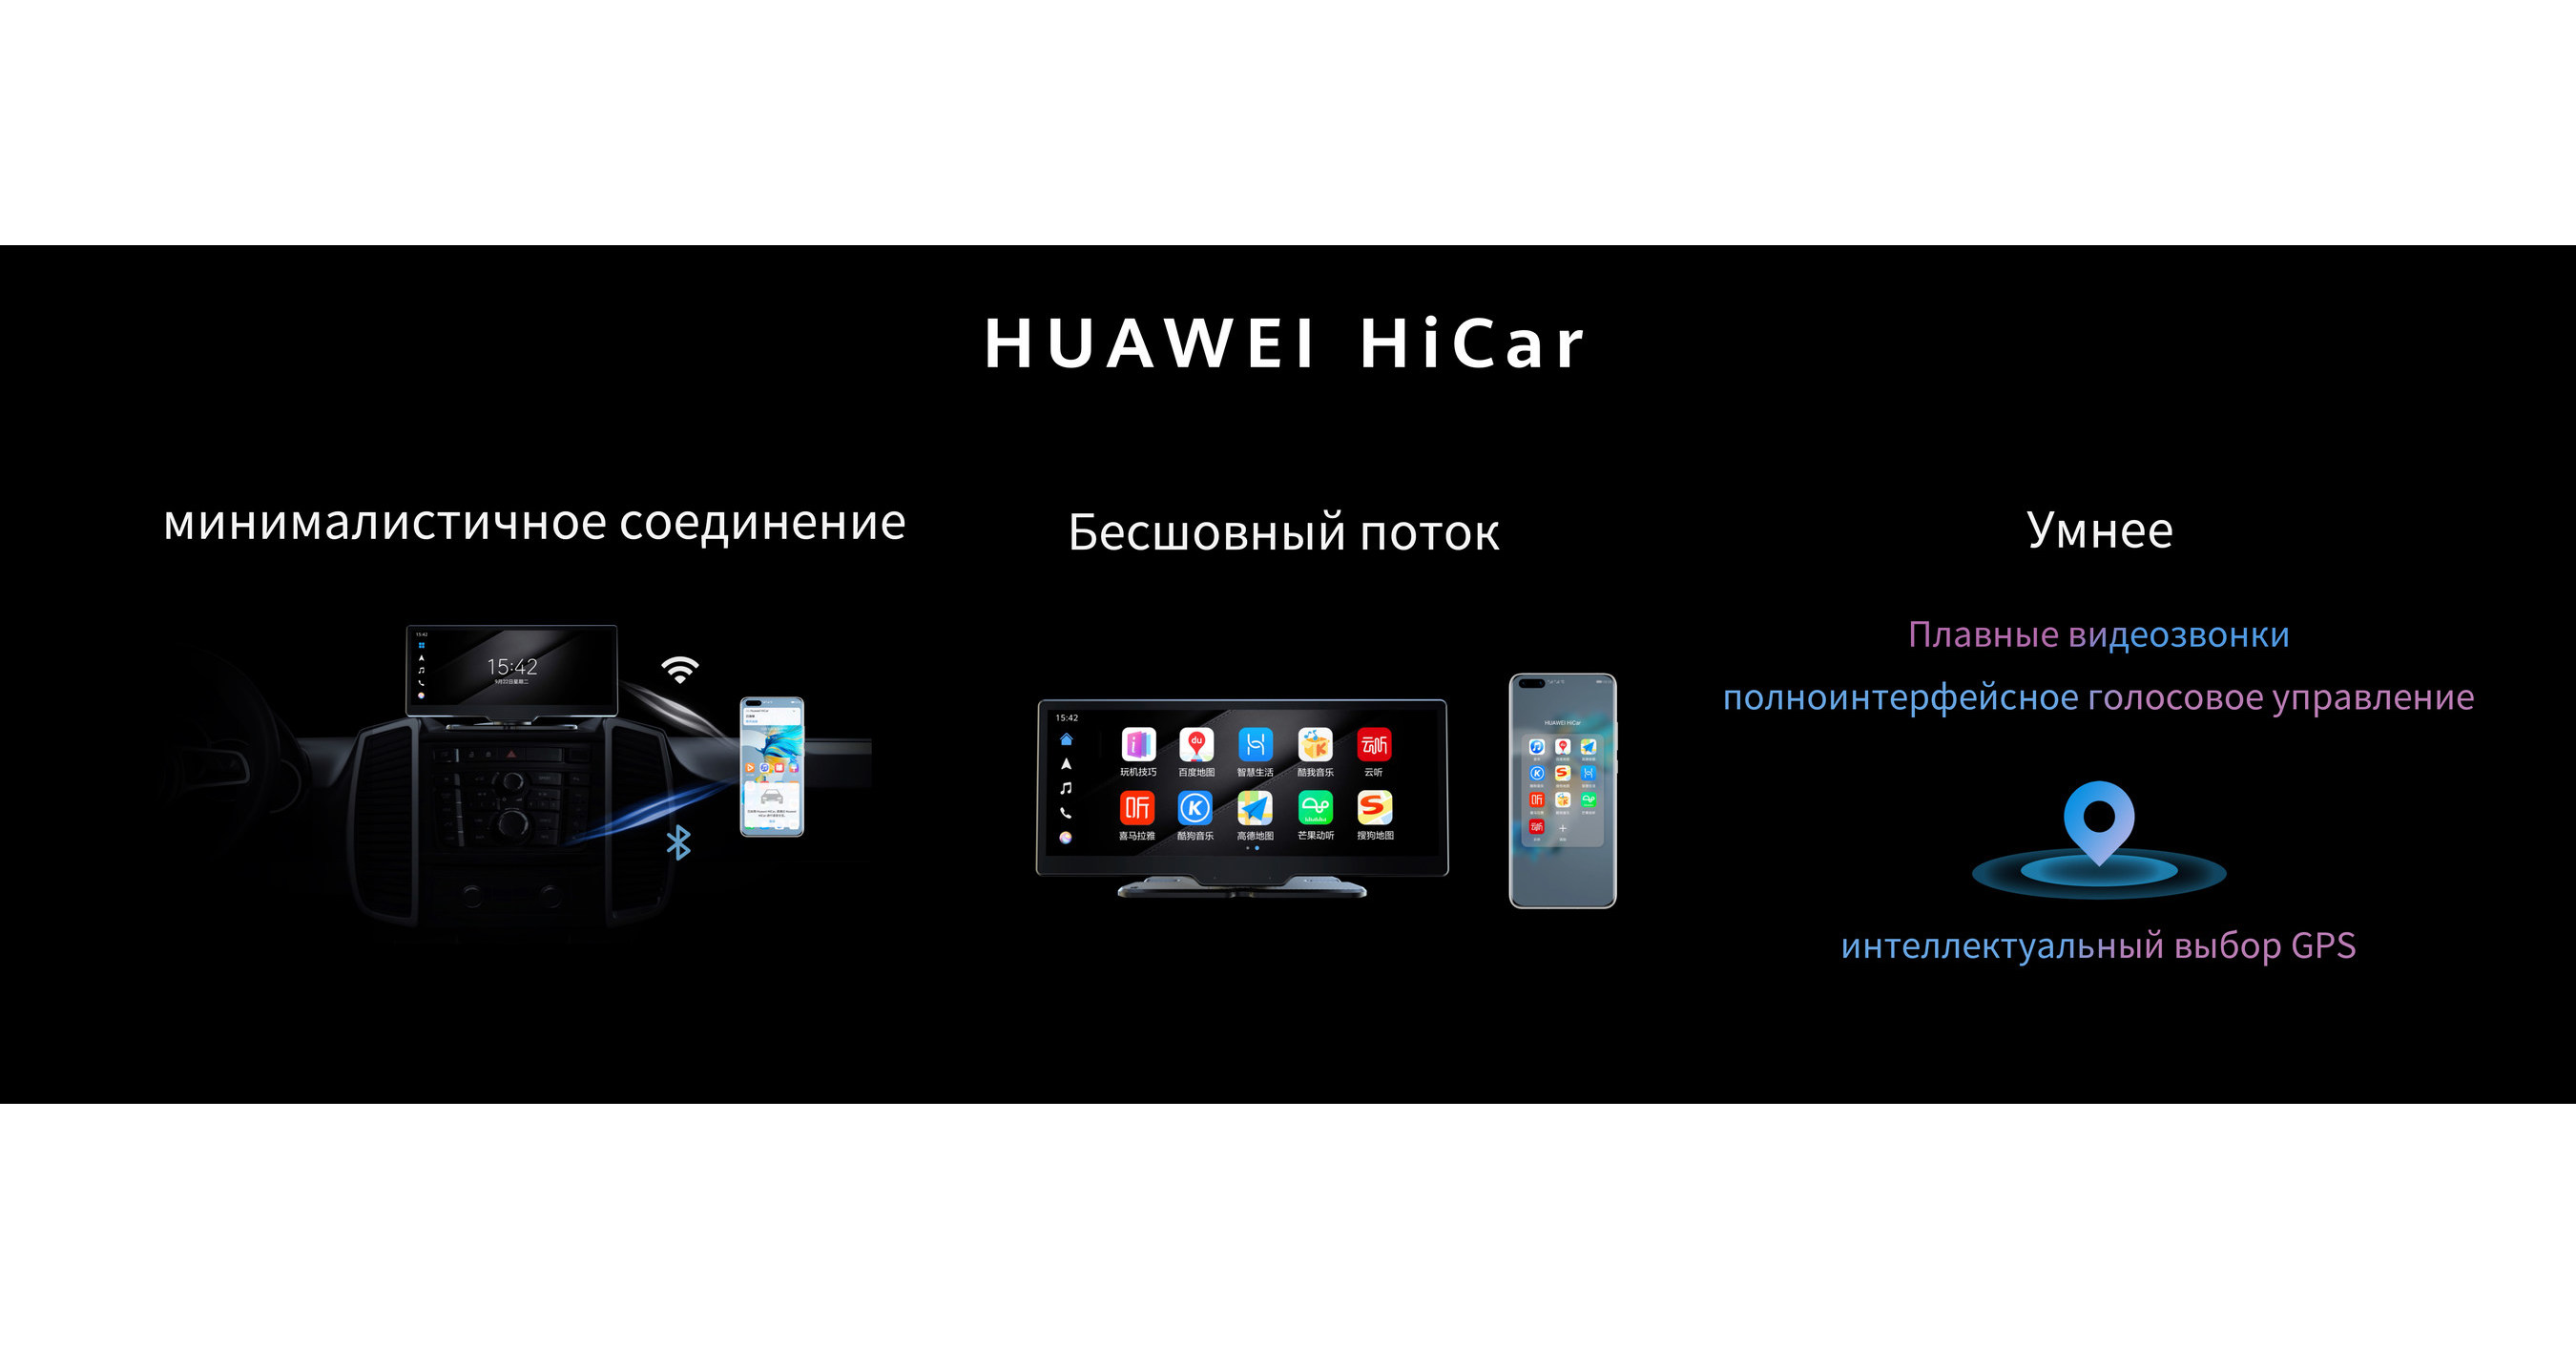 Как поставить андроид на хуавей. Huawei Hicar Smart. Android auto на Huawei. Андроид авто на смартфоне Хуавей p 30. Green Screen Android auto Huawei.